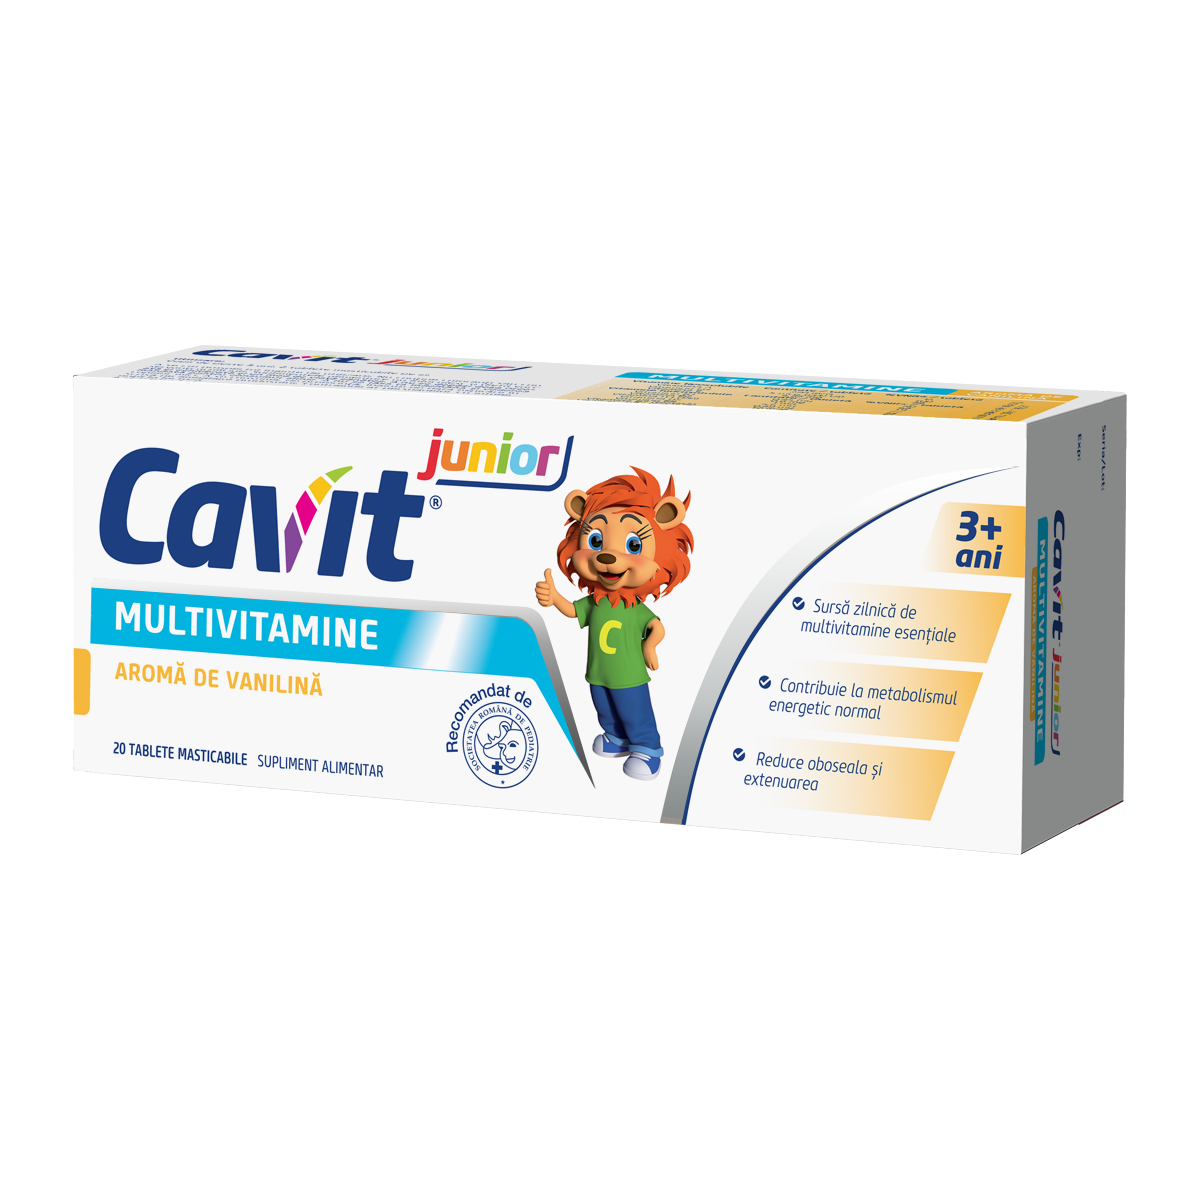 Copii - Cavit junior multivitamine cu aroma de vanilina, 20 tablete, Biofarm, sinapis.ro